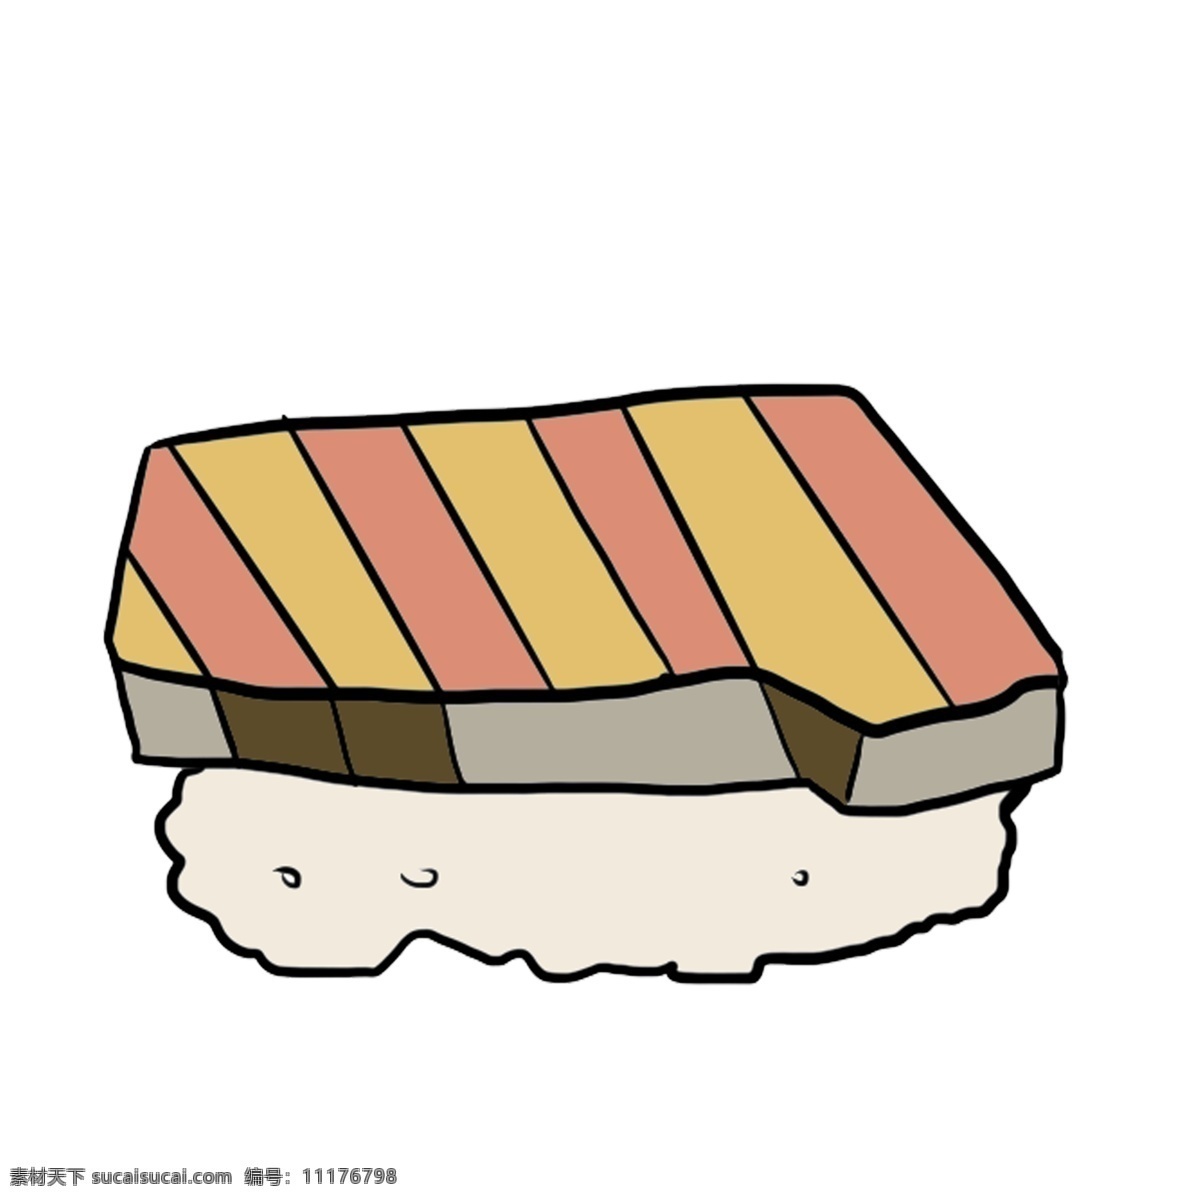 日本 特色 美食 插画 日本文化 小吃食物 肉 一块肉 食物插图 日本小吃 特色美食 寿司